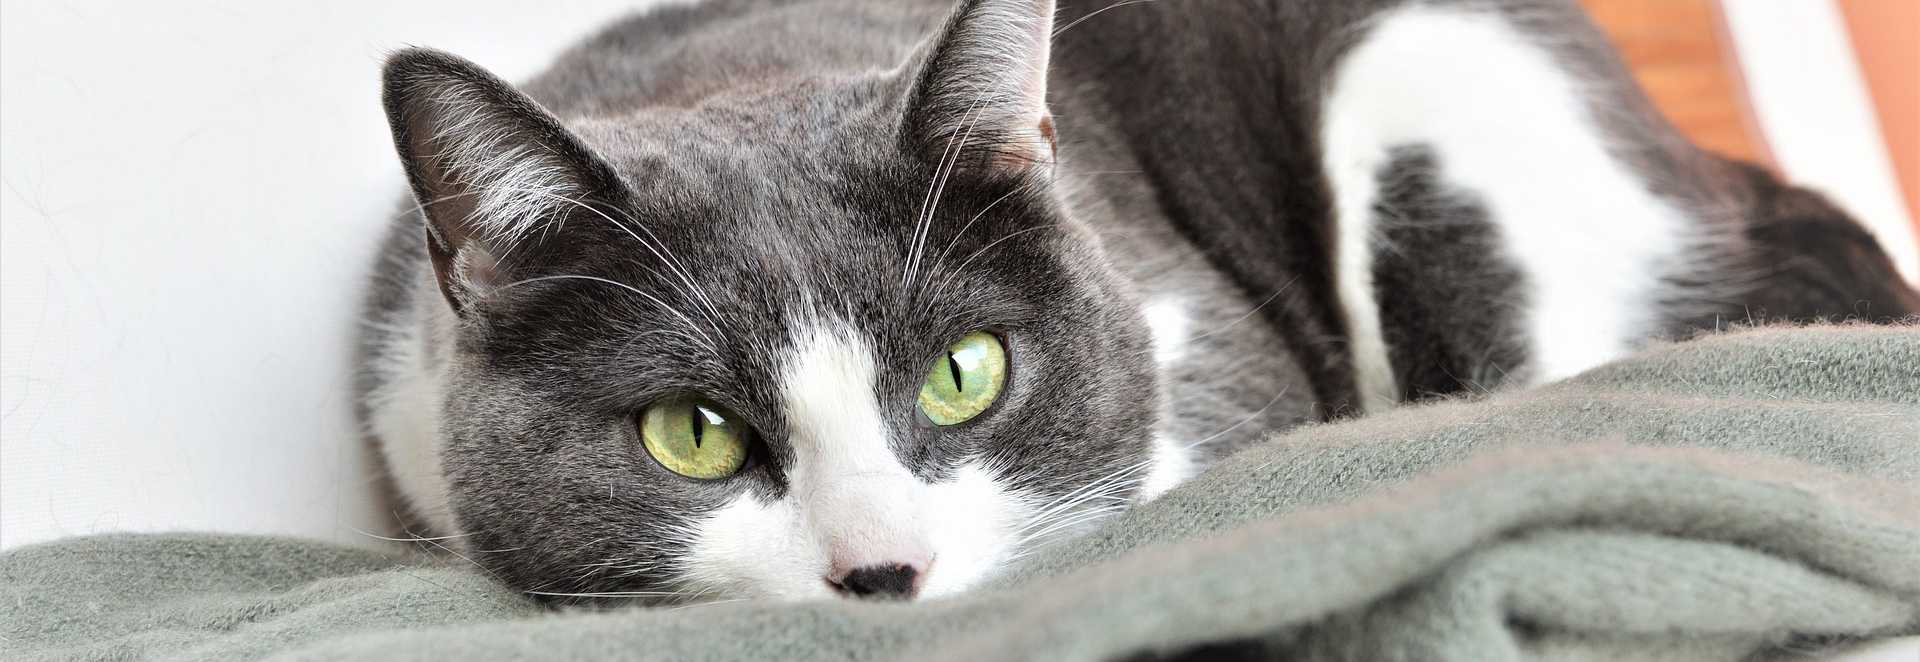 cat resting on blanket